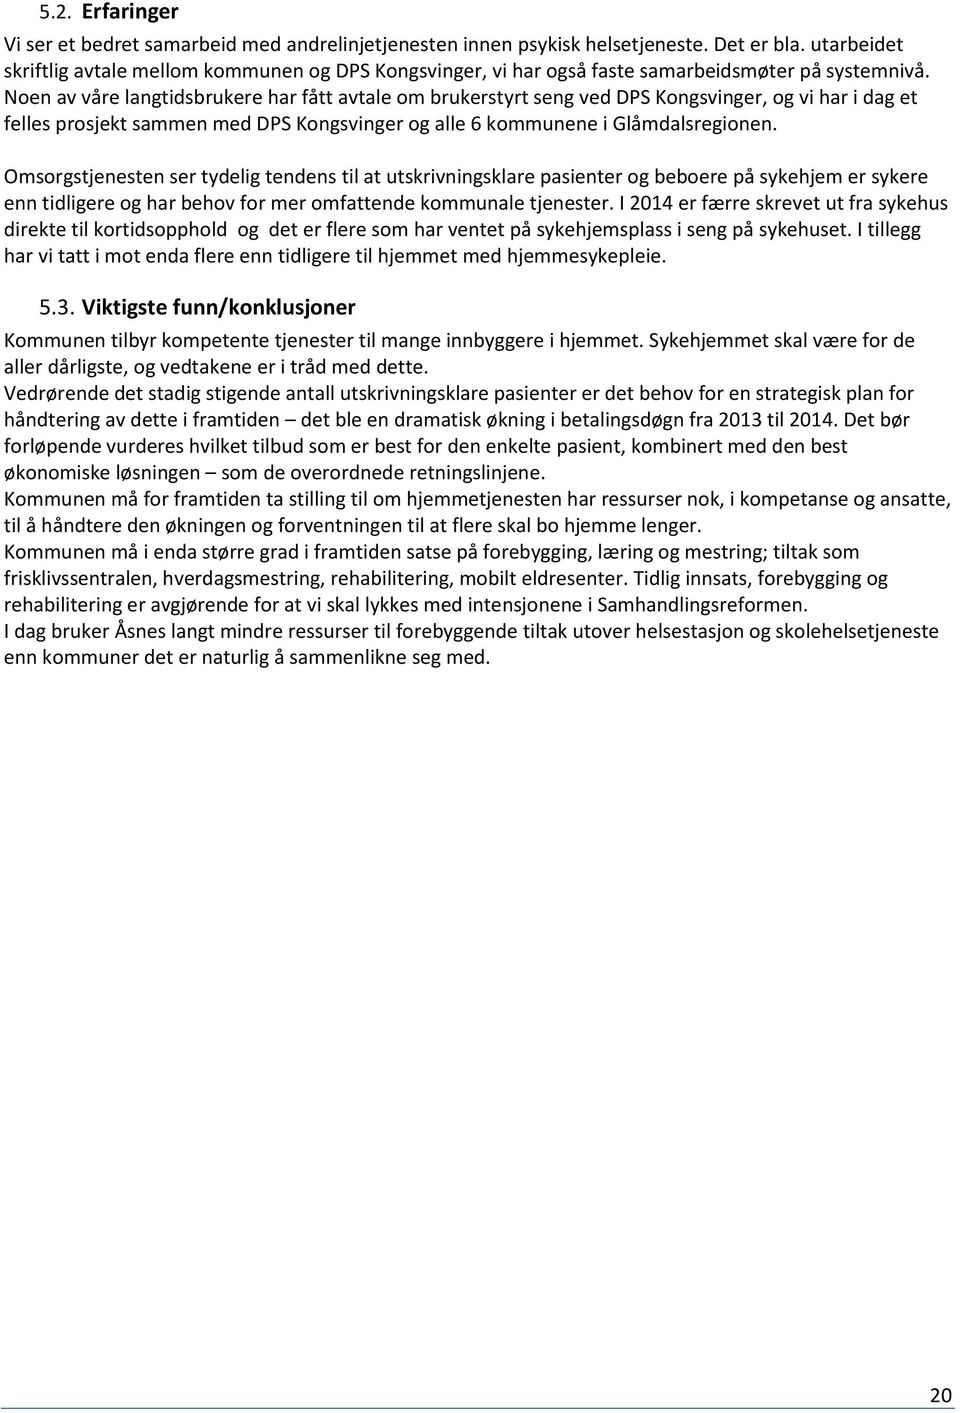 Noen av våre langtidsbrukere har fått avtale om brukerstyrt seng ved DPS Kongsvinger, og vi har i dag et felles prosjekt sammen med DPS Kongsvinger og alle 6 kommunene i Glåmdalsregionen.